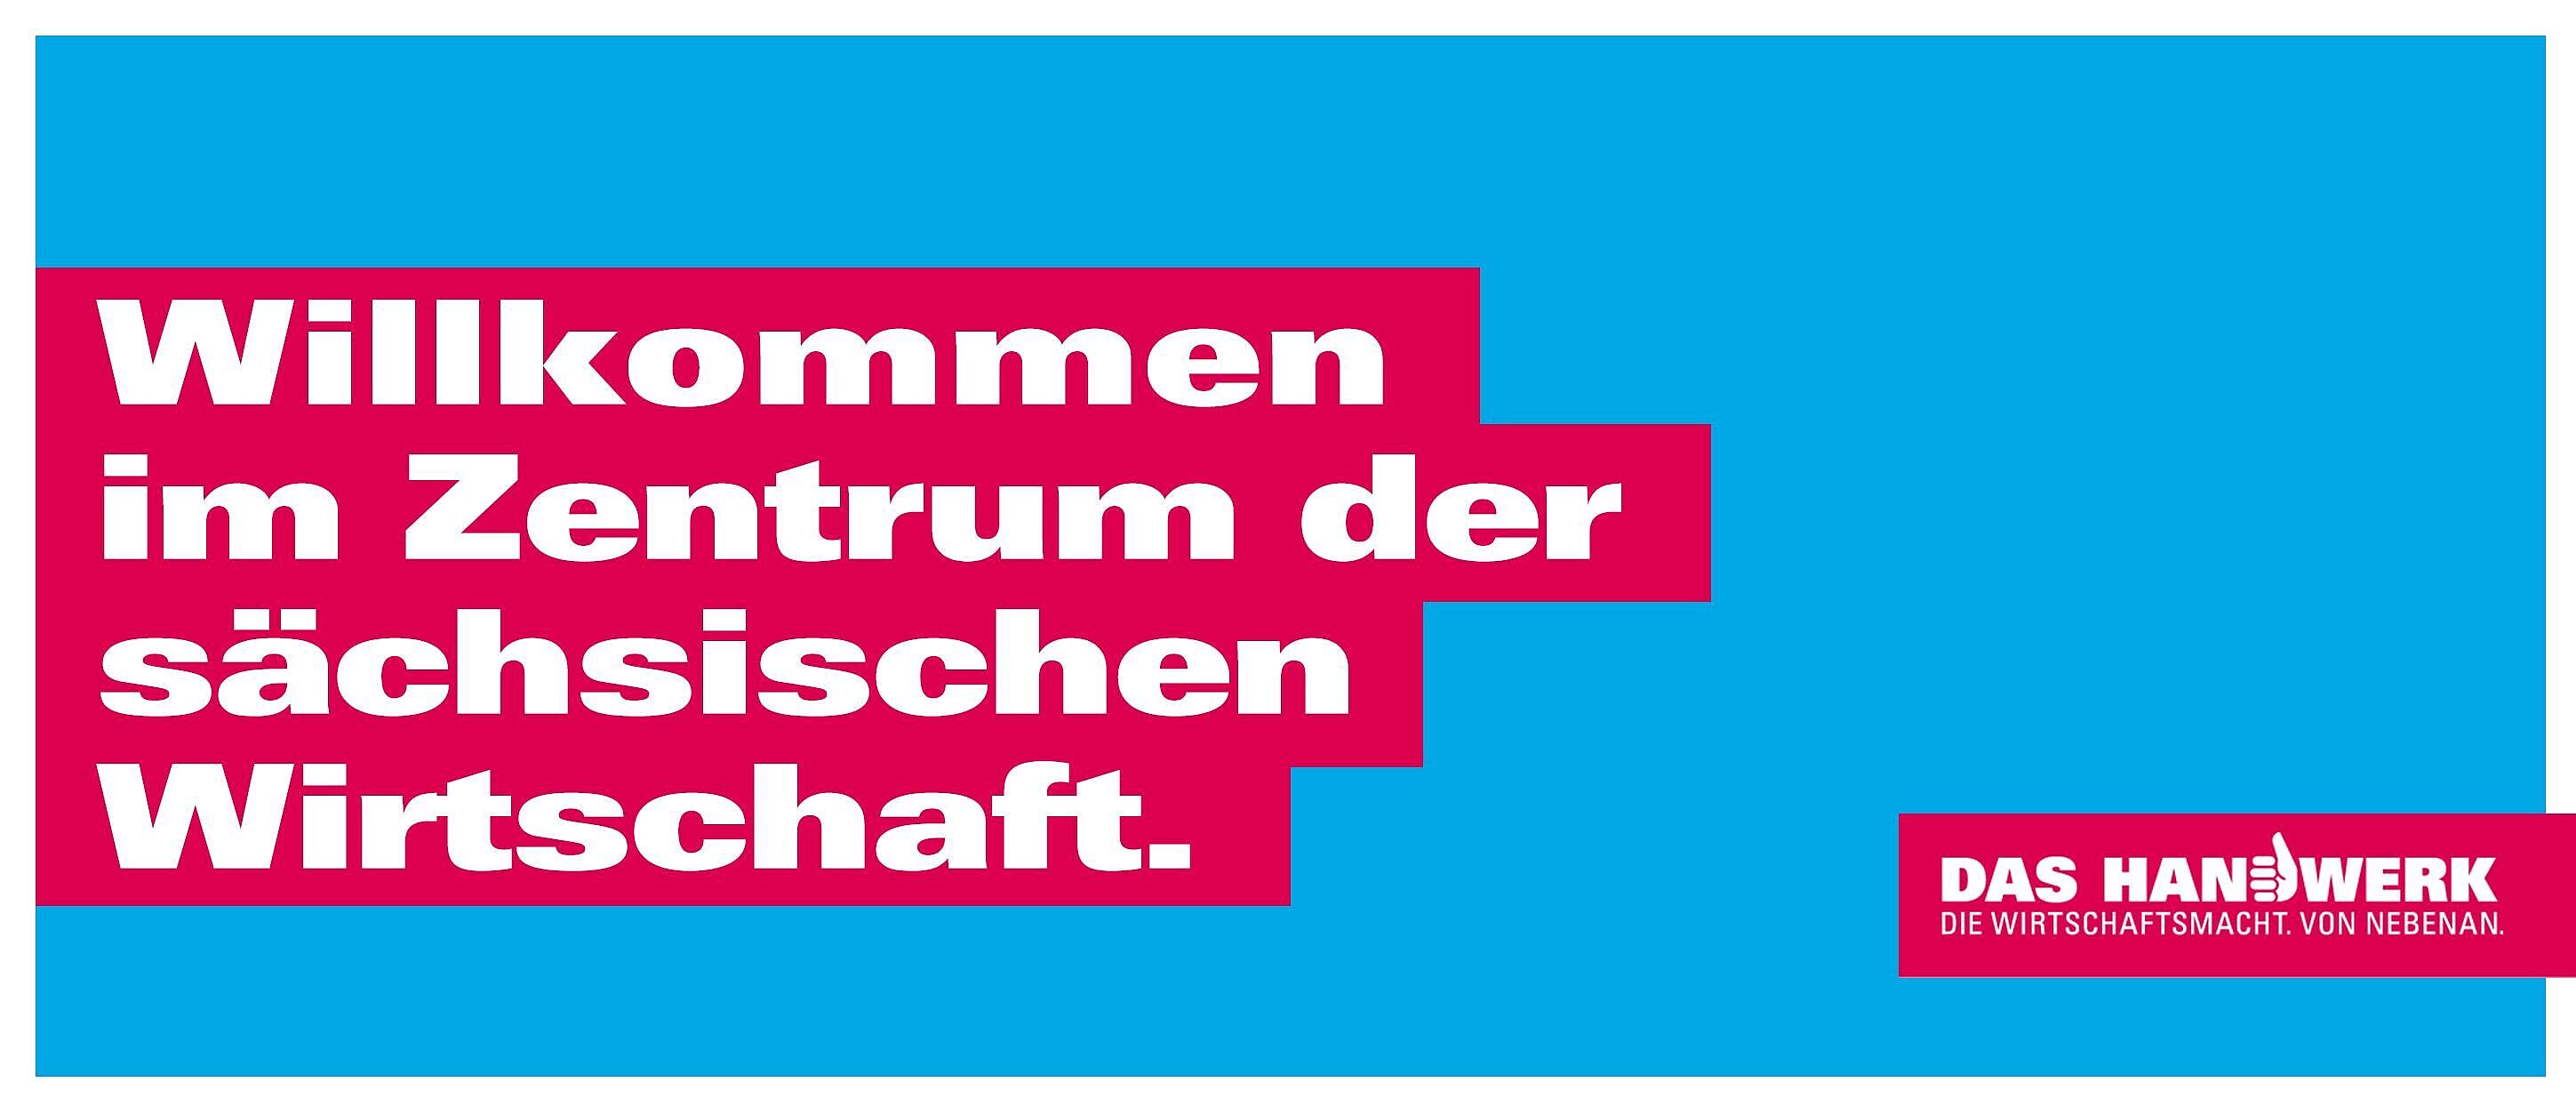 Hellblauer Hintergrund mit weißer Schrift auf rotem Hintergrund \"Willkommen  im Zentrum der sächsischen Wirtschaft.\"